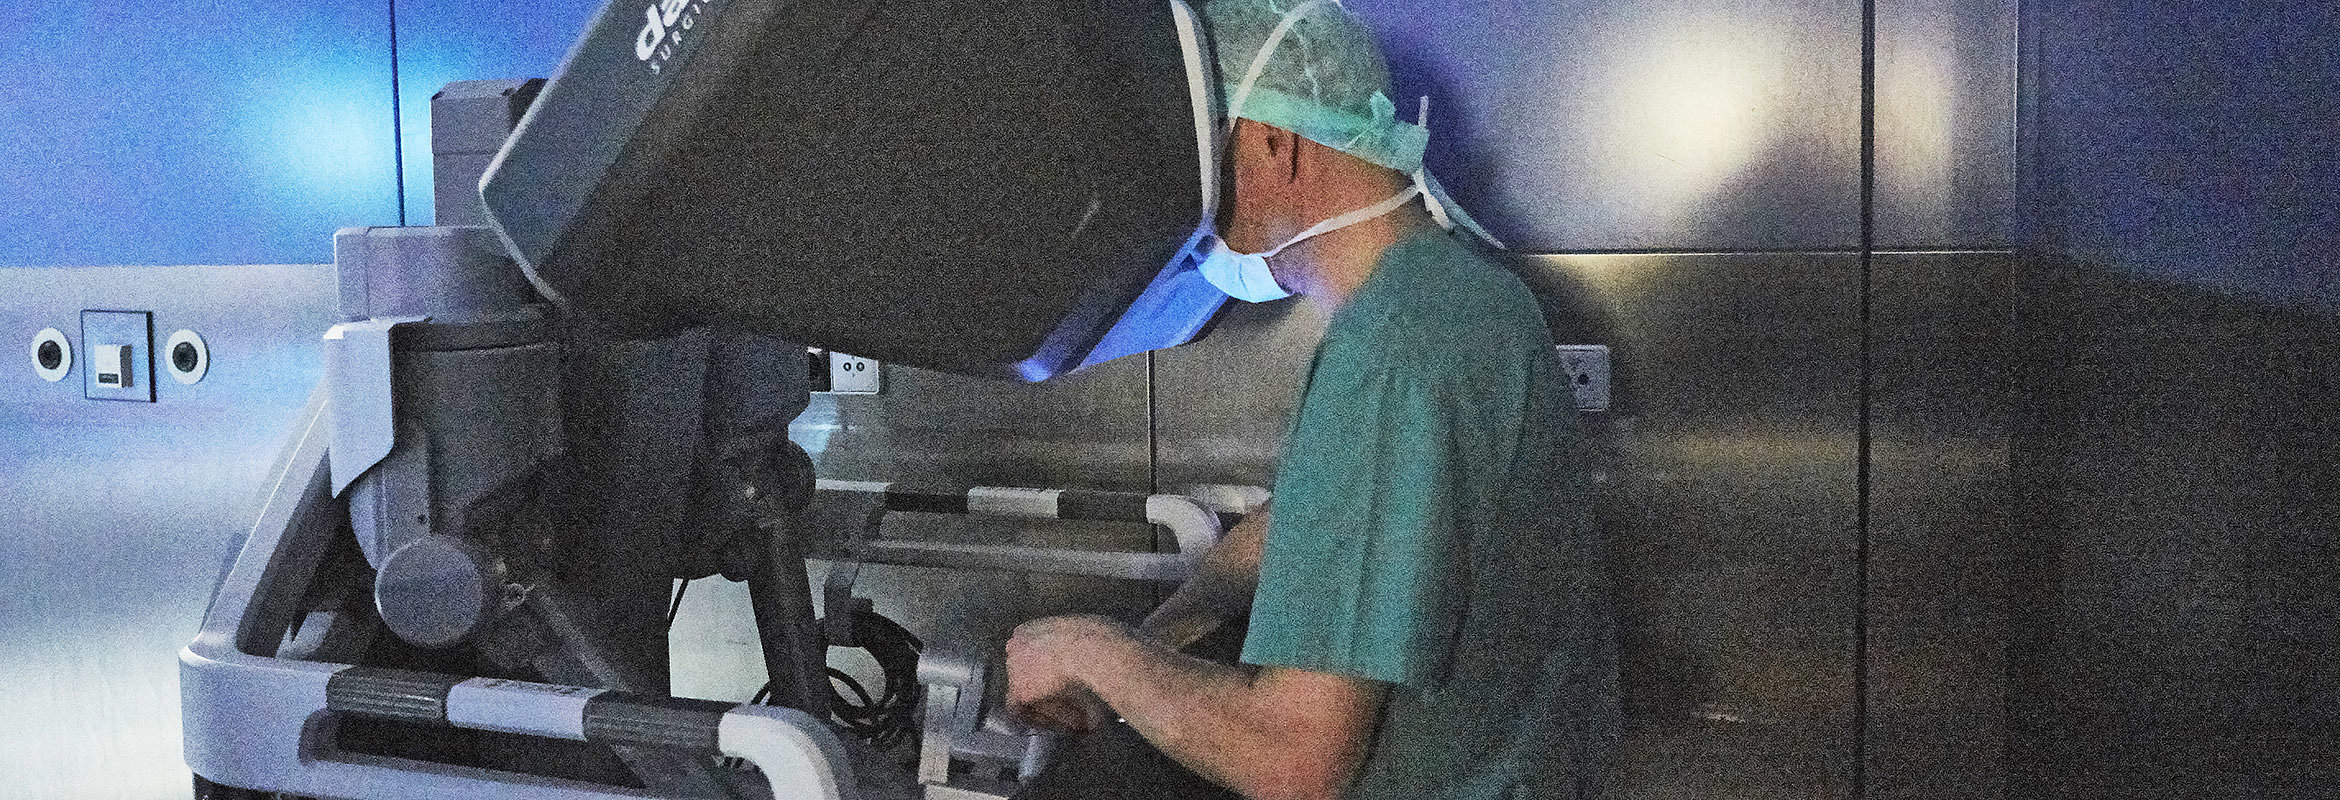 Ein Arzt steuert den OP-Roboter mithilfe eines Navigationsgeräts